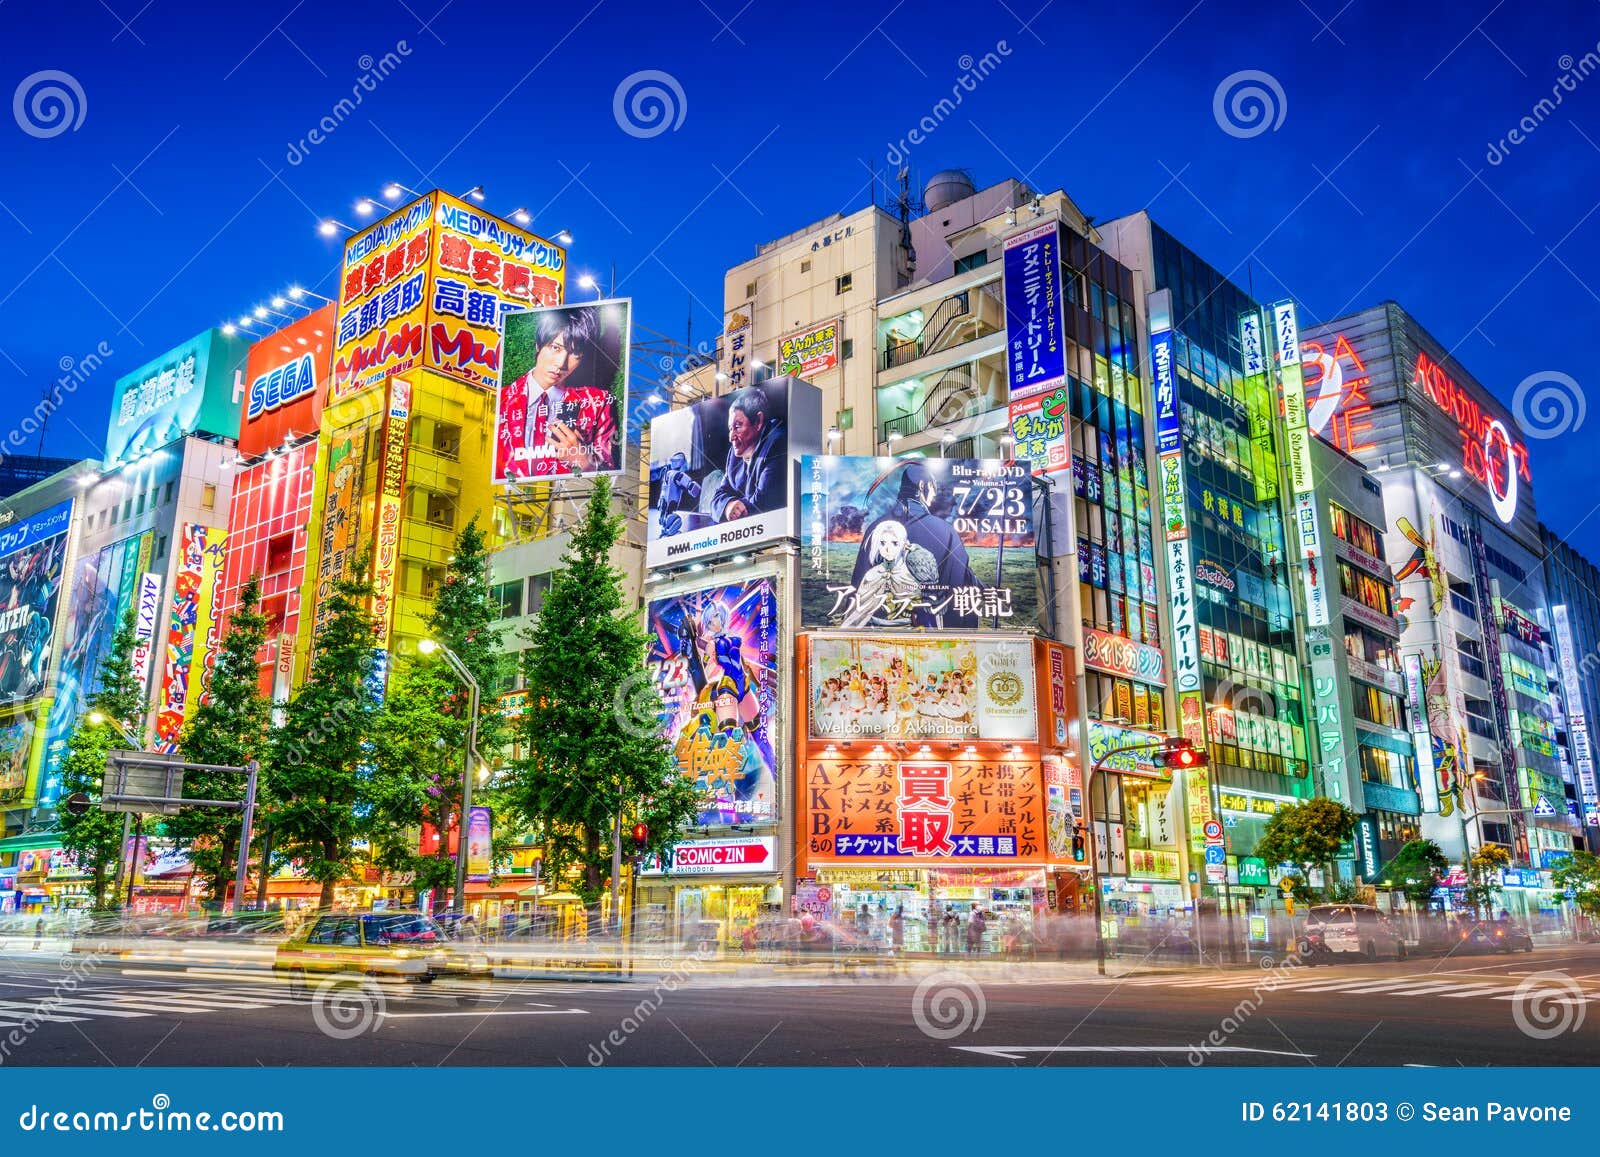 Free Images : train, decoration, japan, tokyo, anime, manga, mangaka  4608x3456 - - 558518 - Free stock photos - PxHere